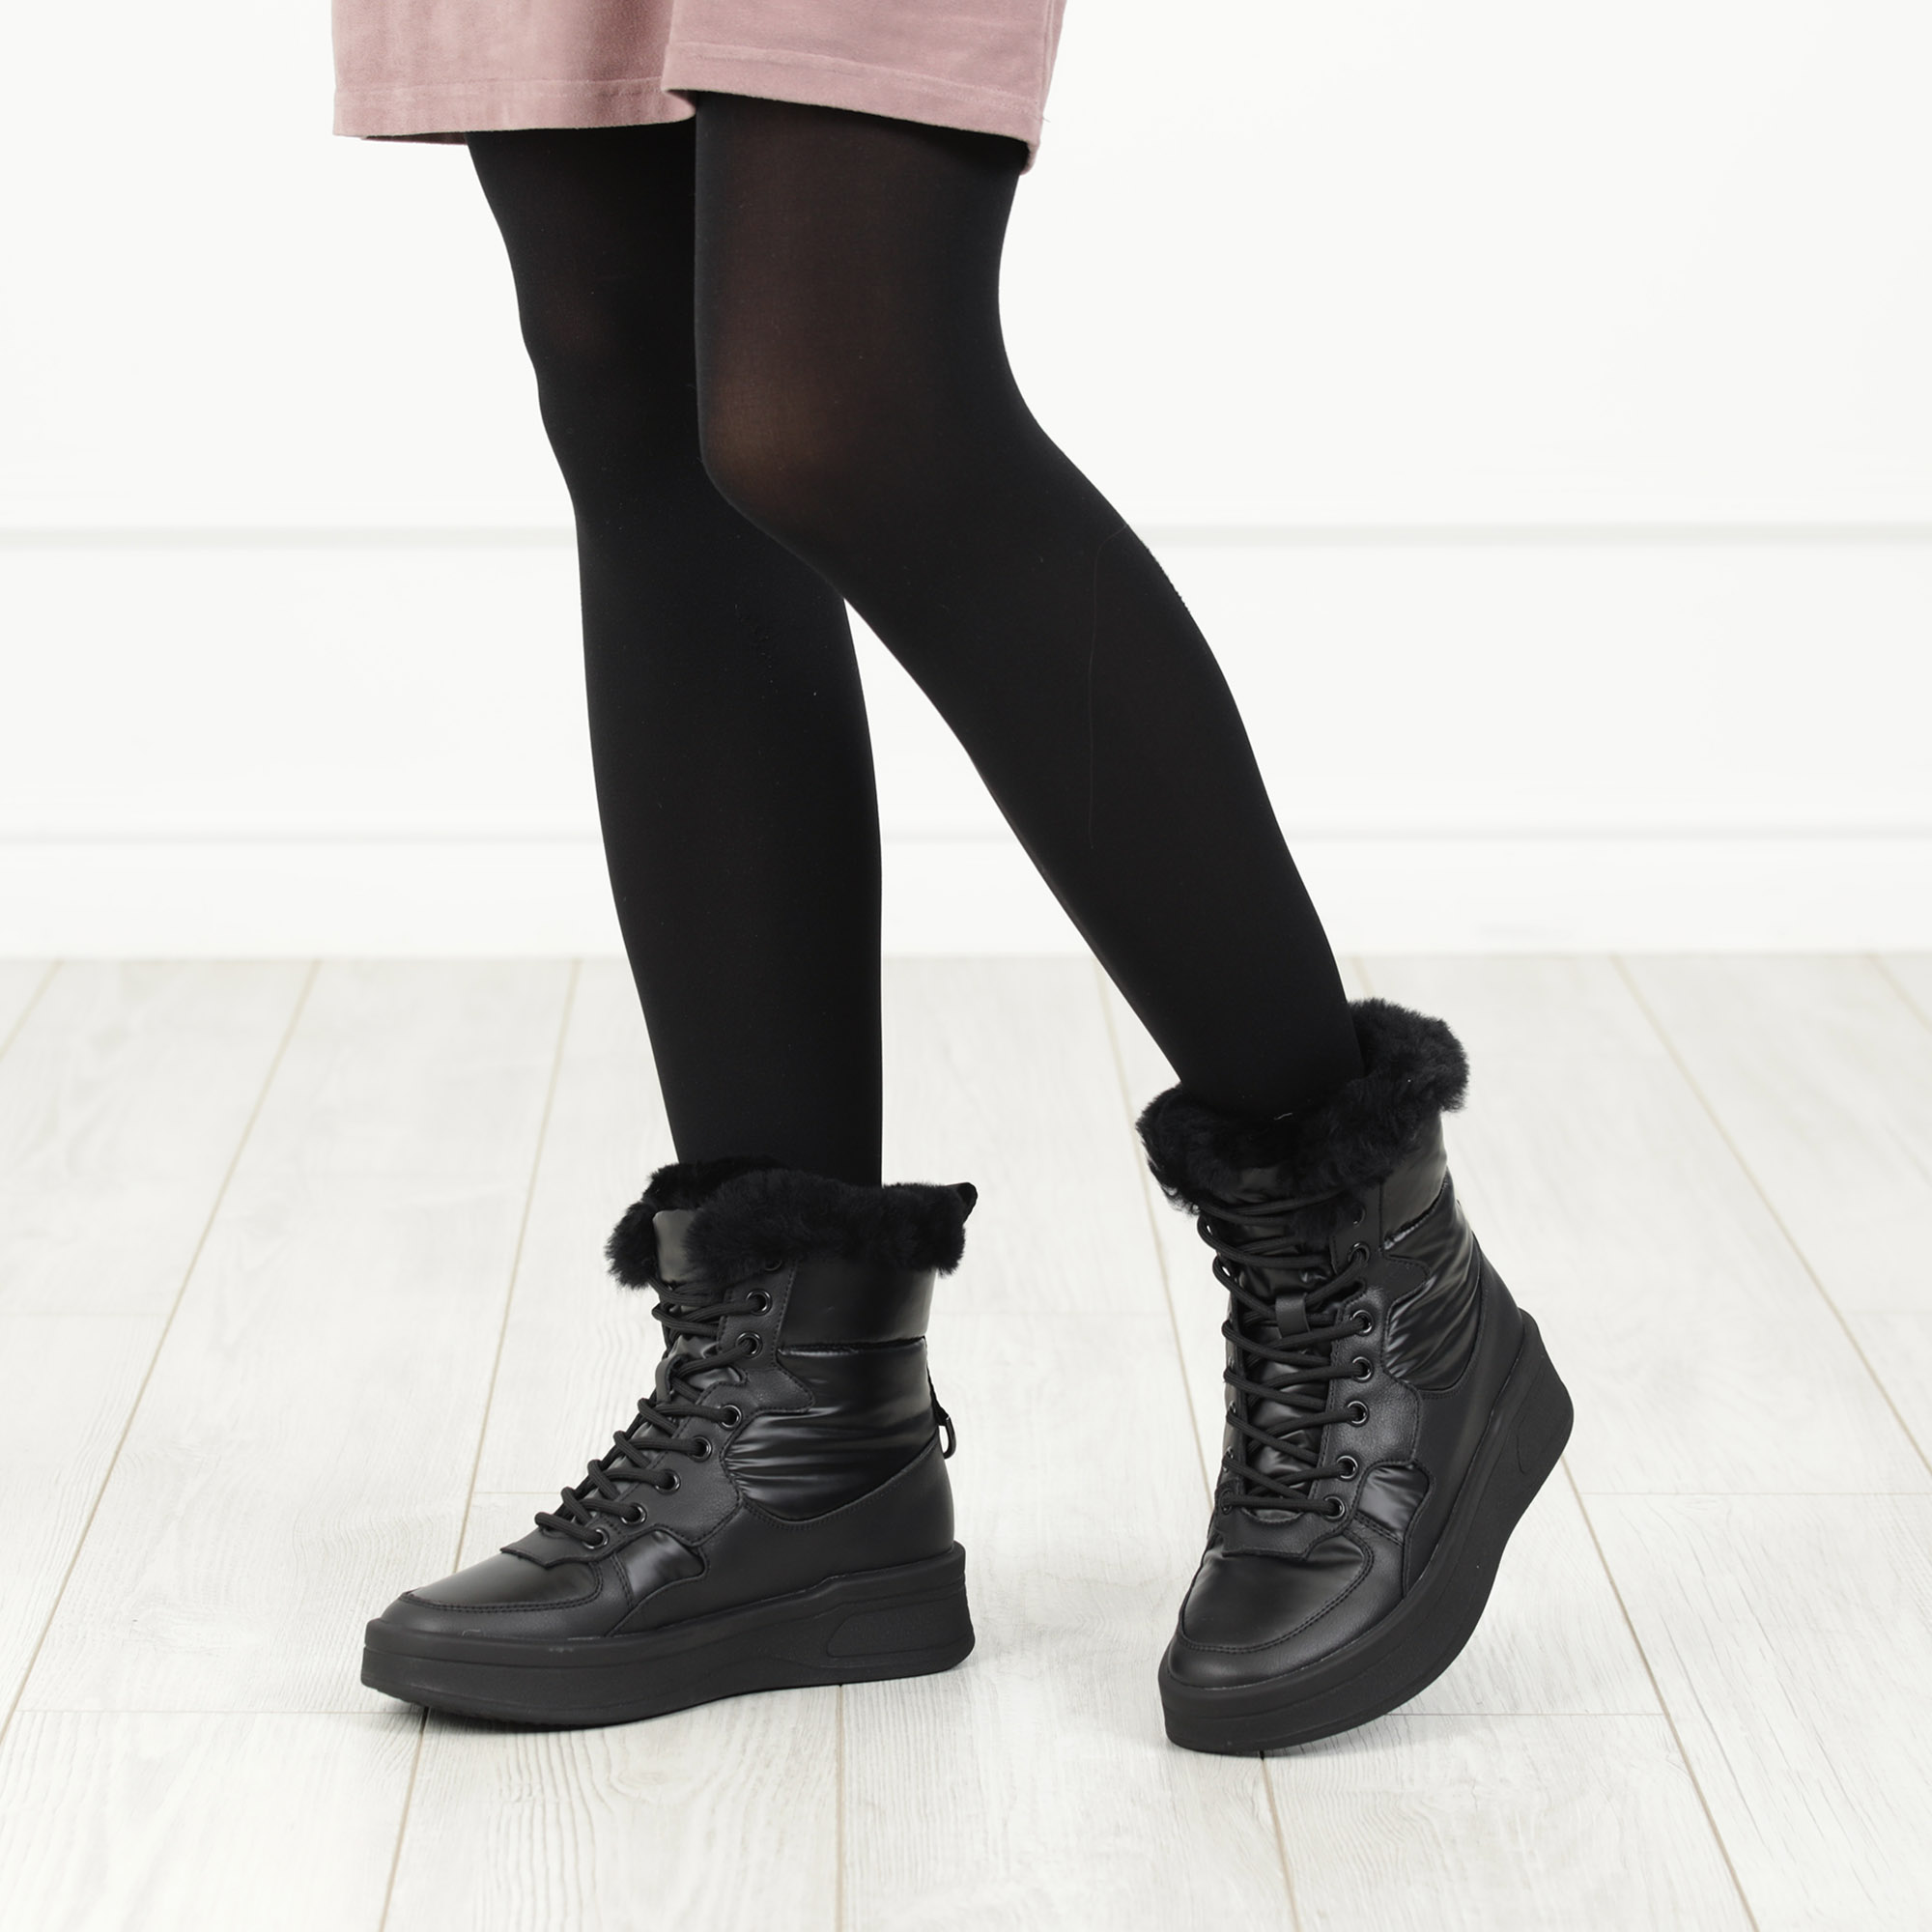 Черные высокие кроссовки из комбинированных материалов смеховой опушкой на подкладке из натуральной шерсти на утолщенной платформе Respect, размер 39, цвет черный - фото 2